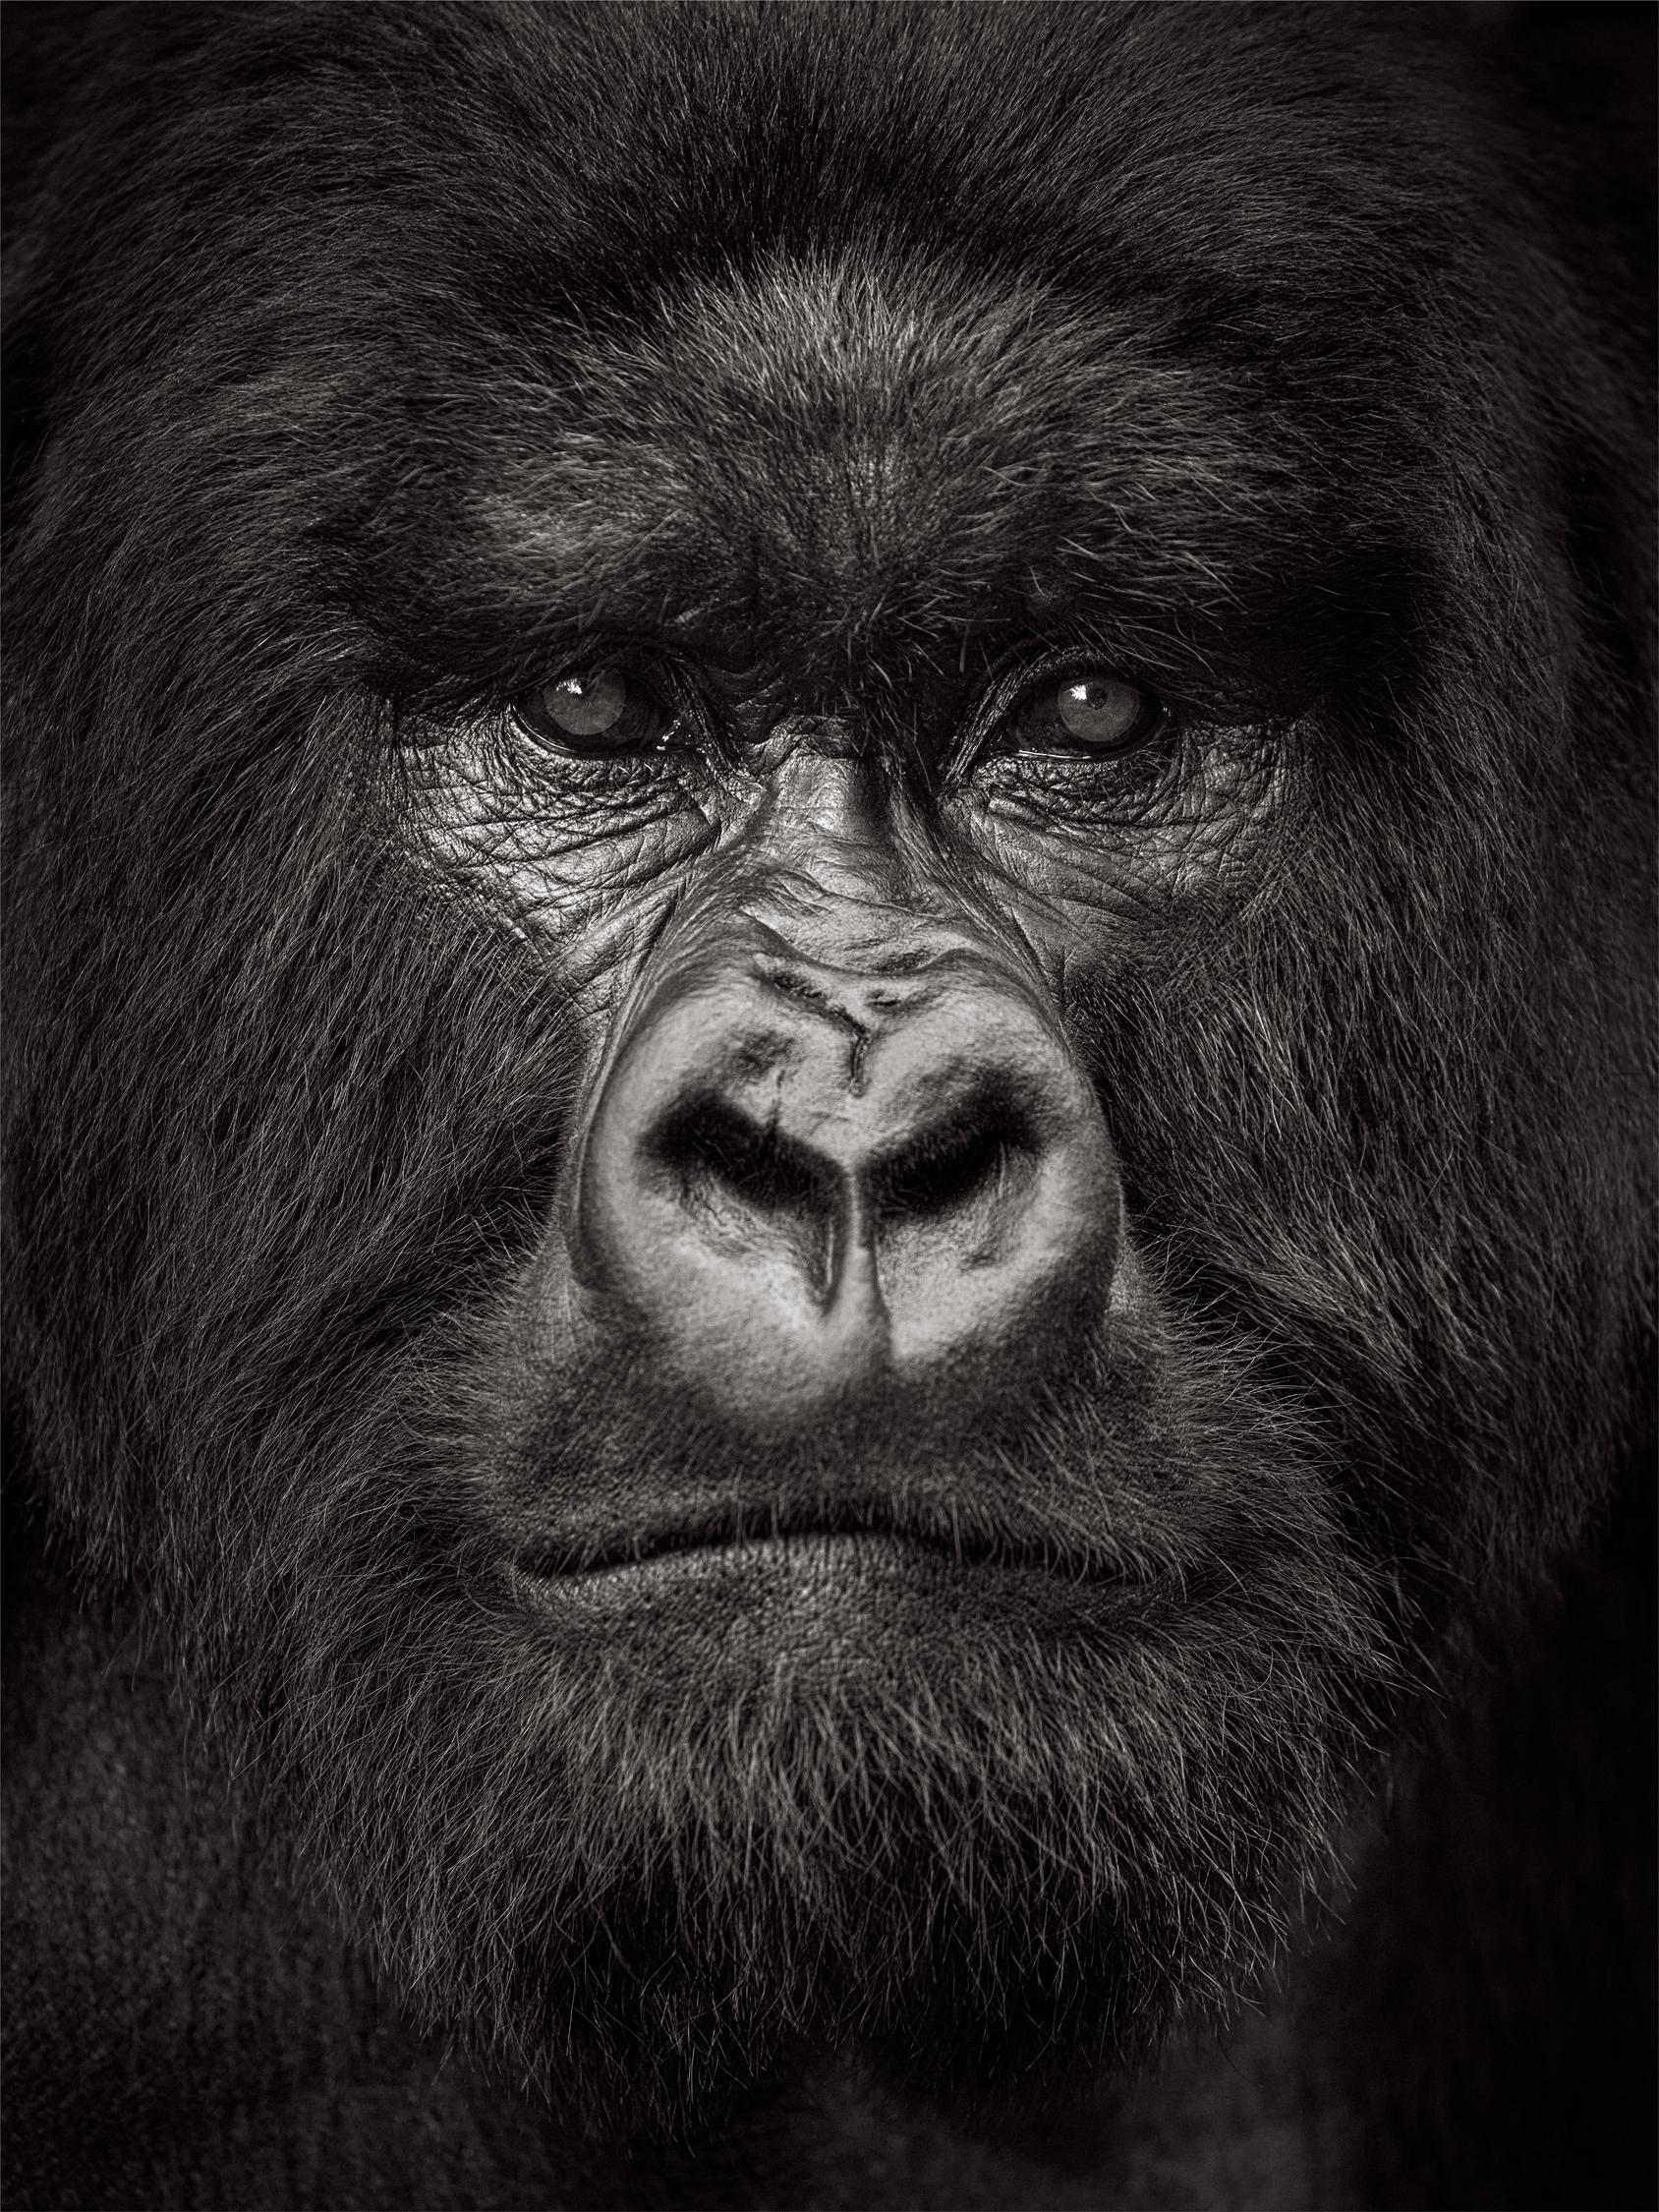 Drew Doggett Black and White Photograph - Intimate, close up portrait of a silverback gorilla in Rwanda